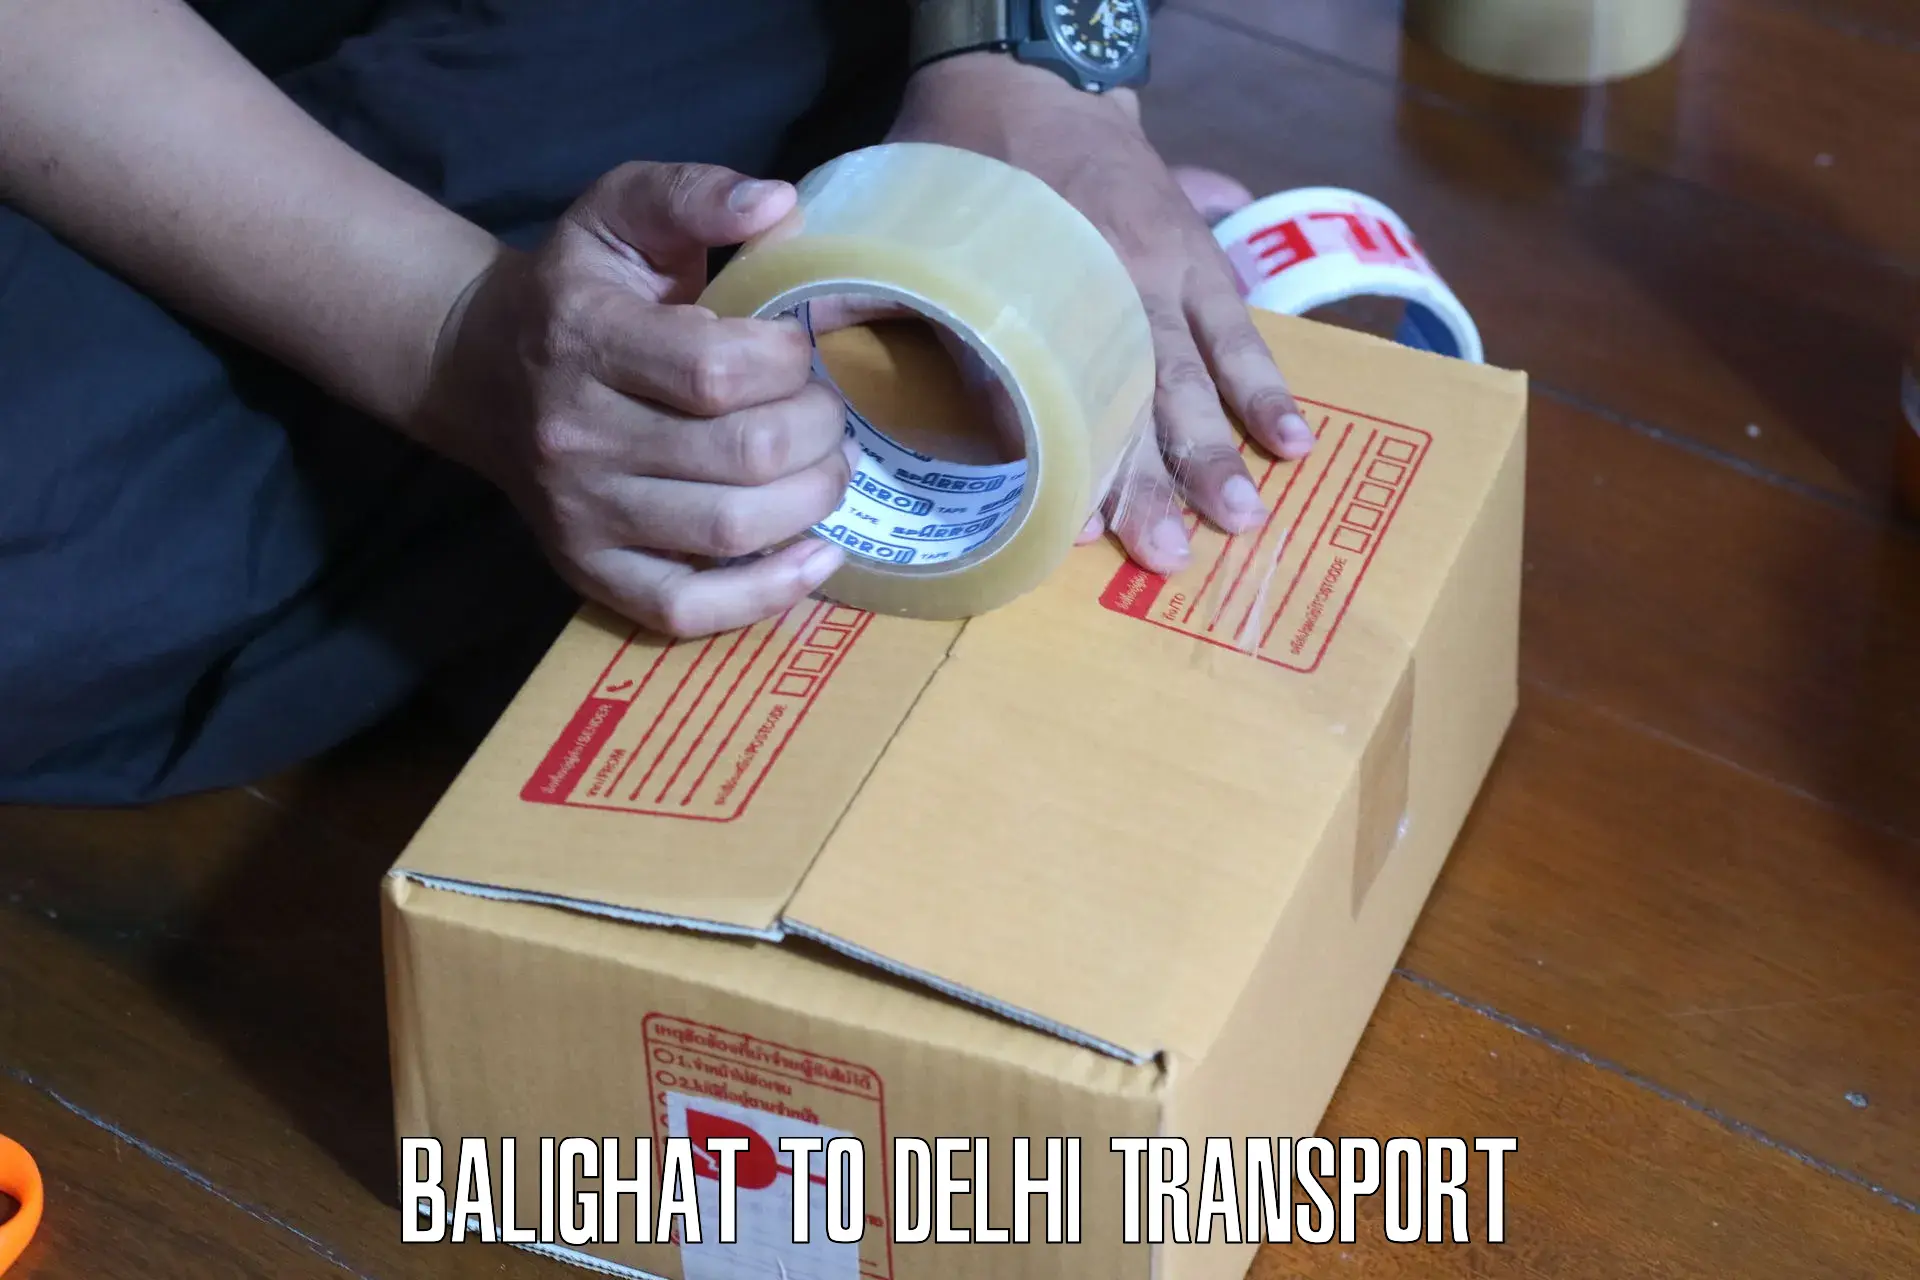 Furniture transport service Balighat to Kalkaji